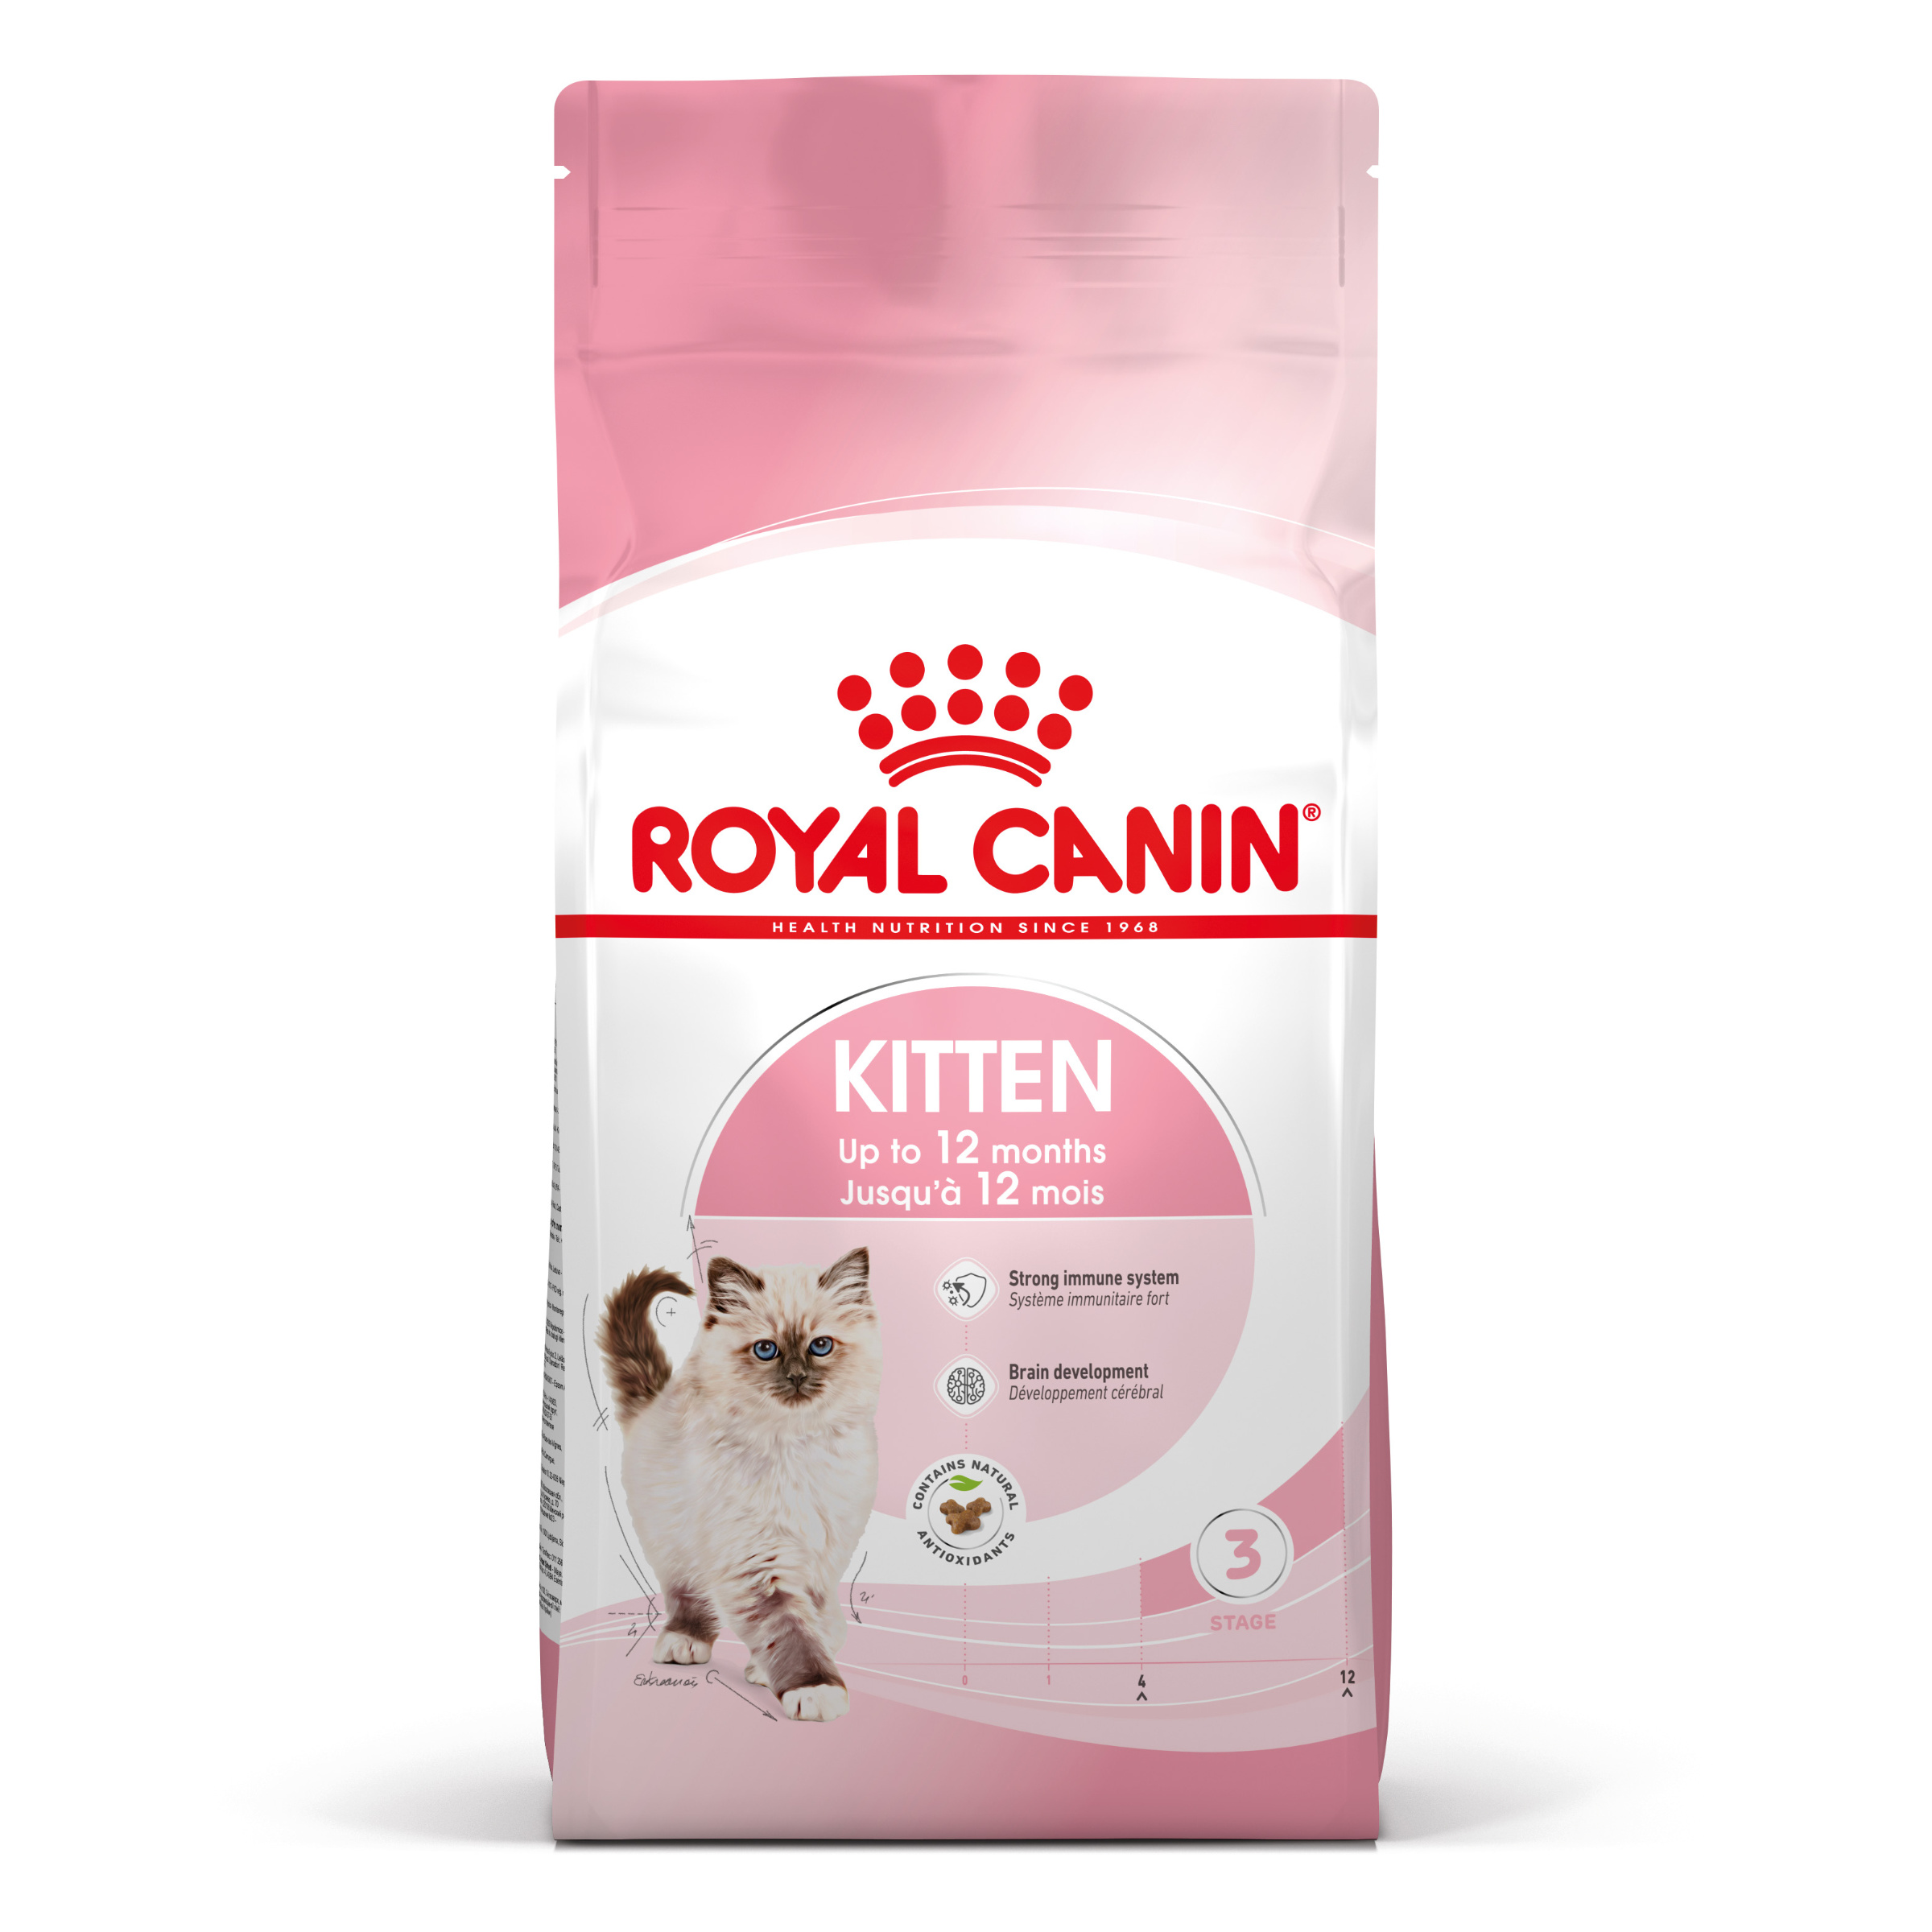 Royal Canin Kitten - Aliment pour chats - Spécial chatons. 2ème âge (jusqu'à 12 mois) - 4kg